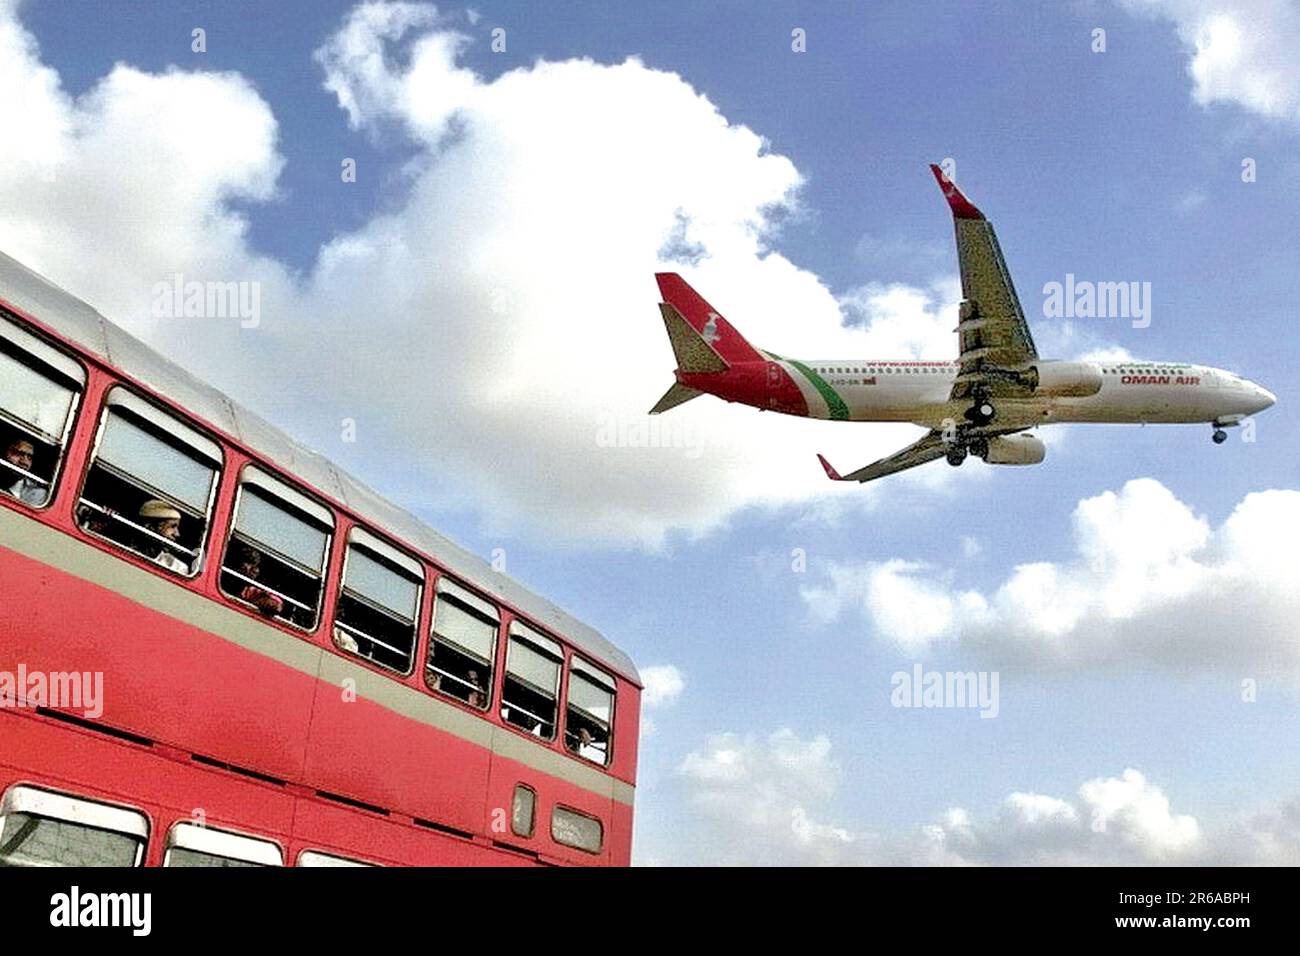 MEILLEUR bus, Oman Air plane, Mumbai, Inde Banque D'Images